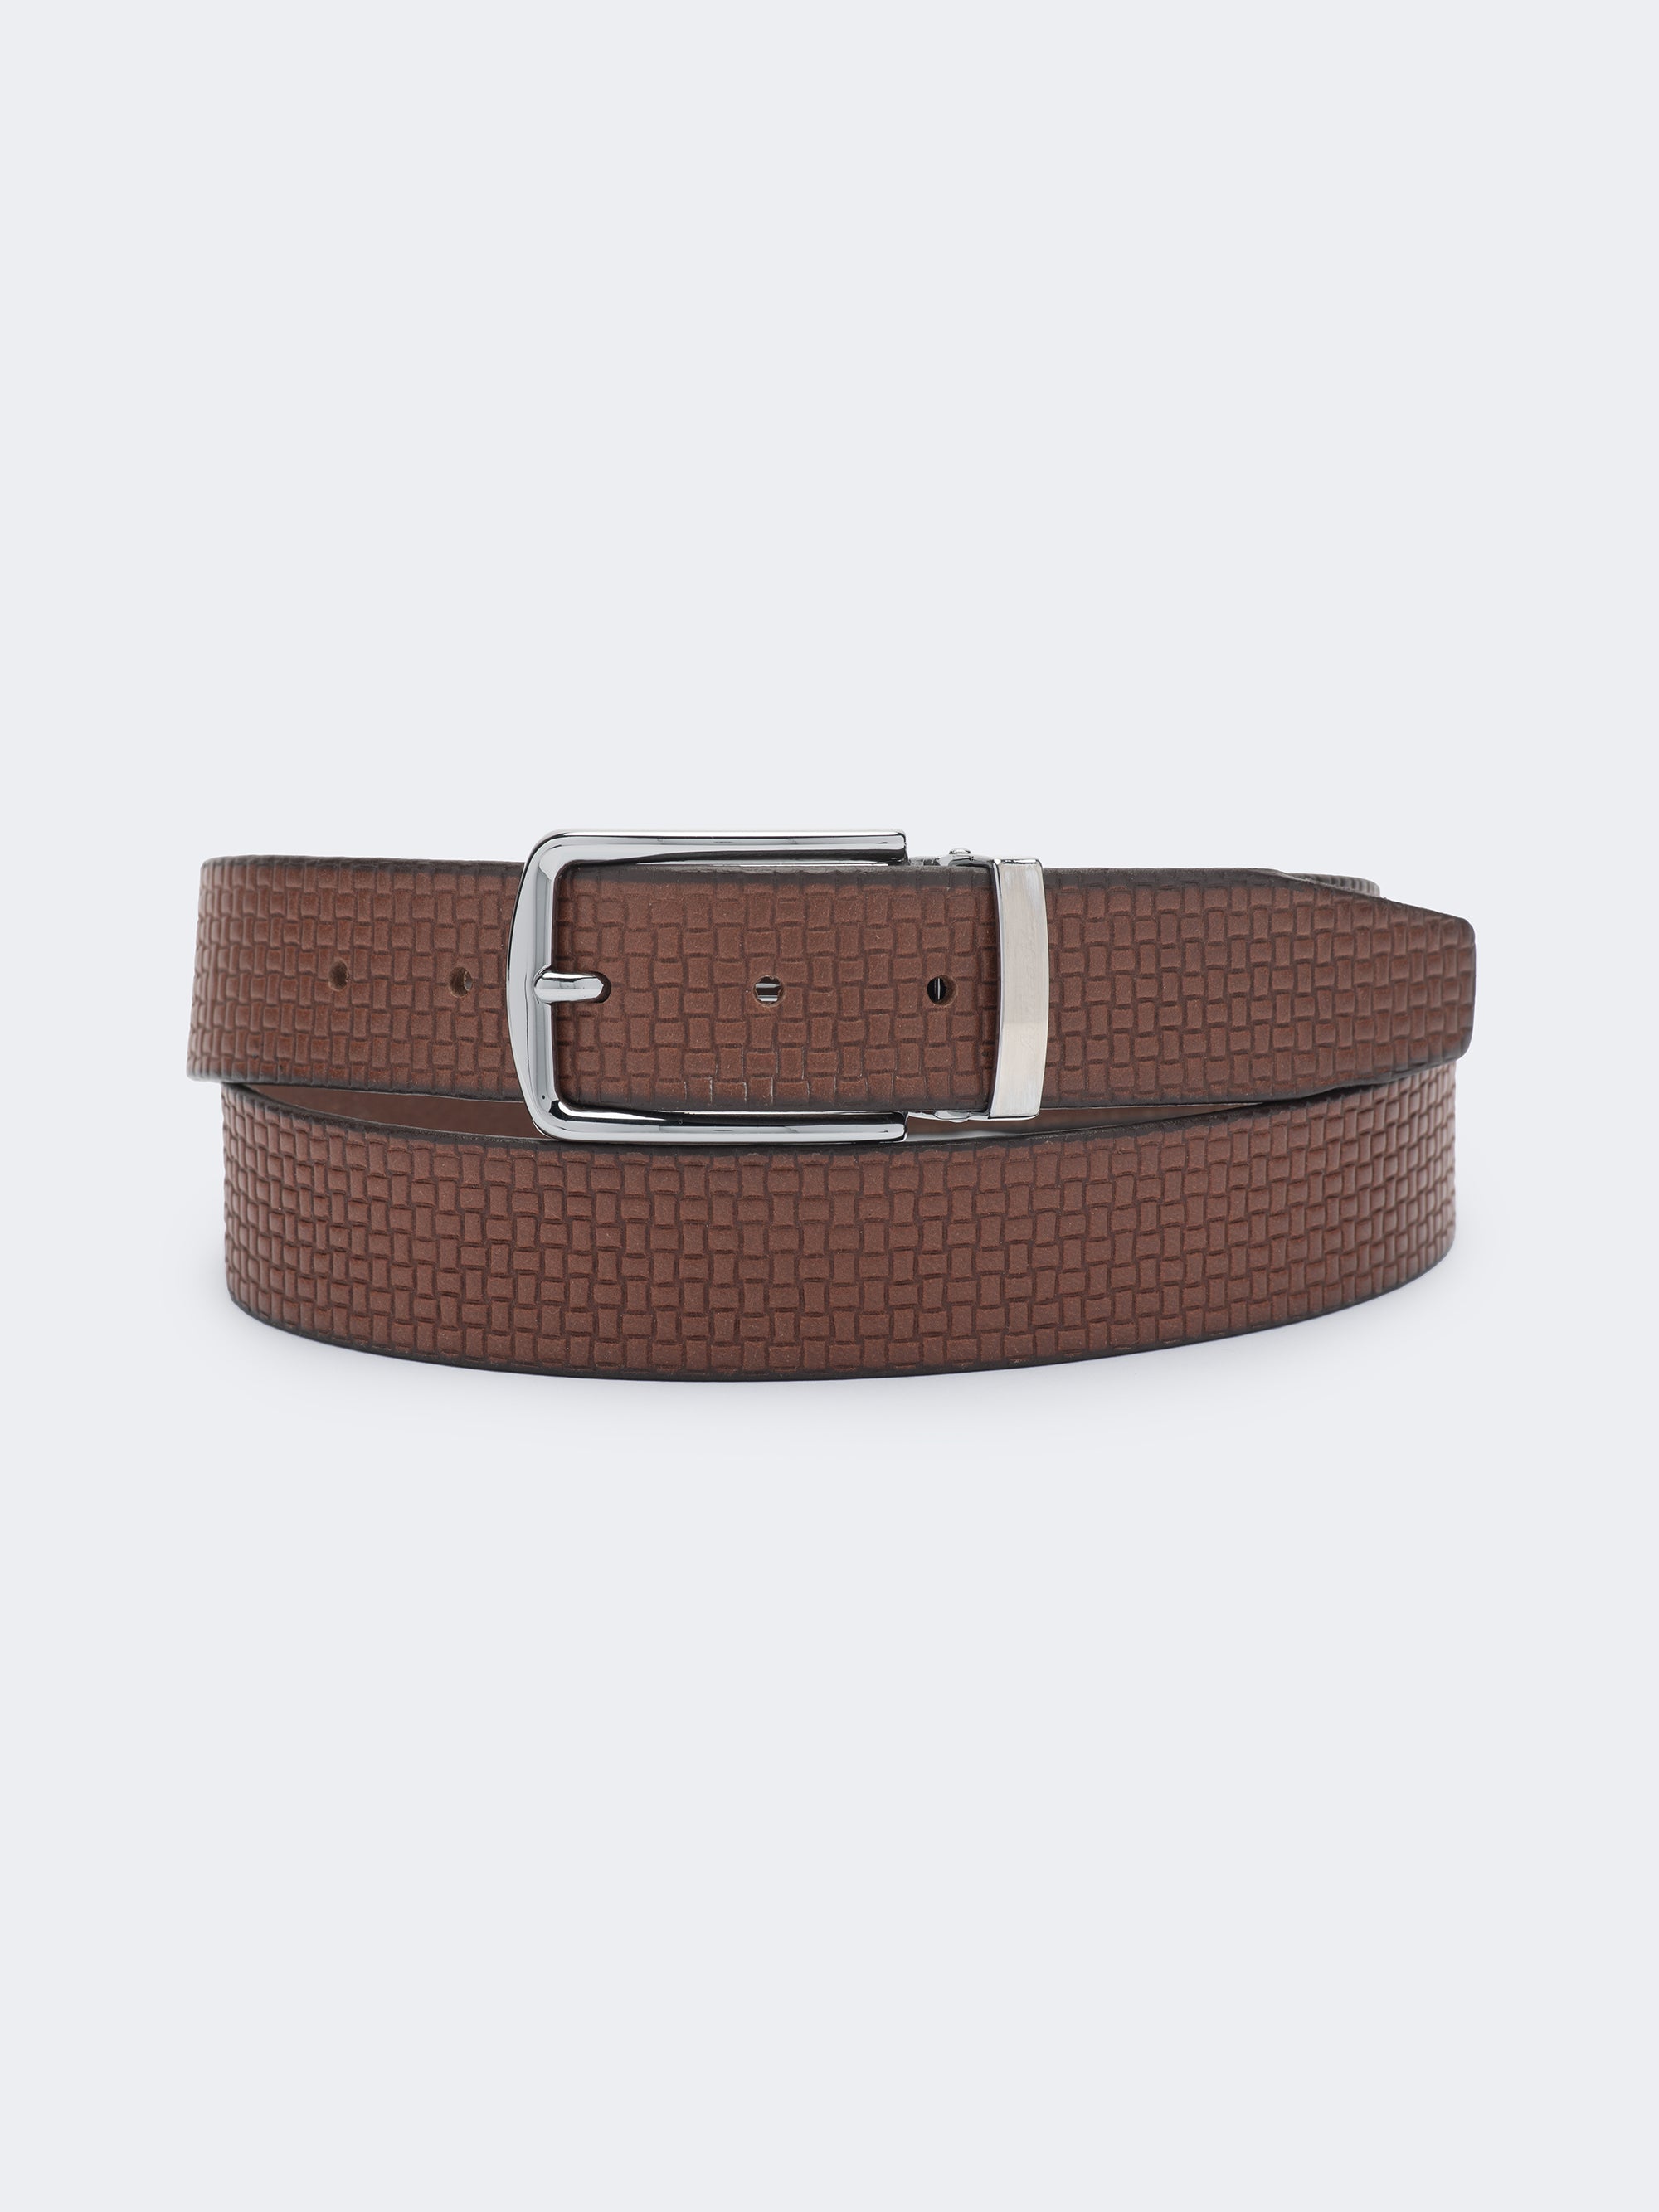 Cognac - Italian Leather Belt